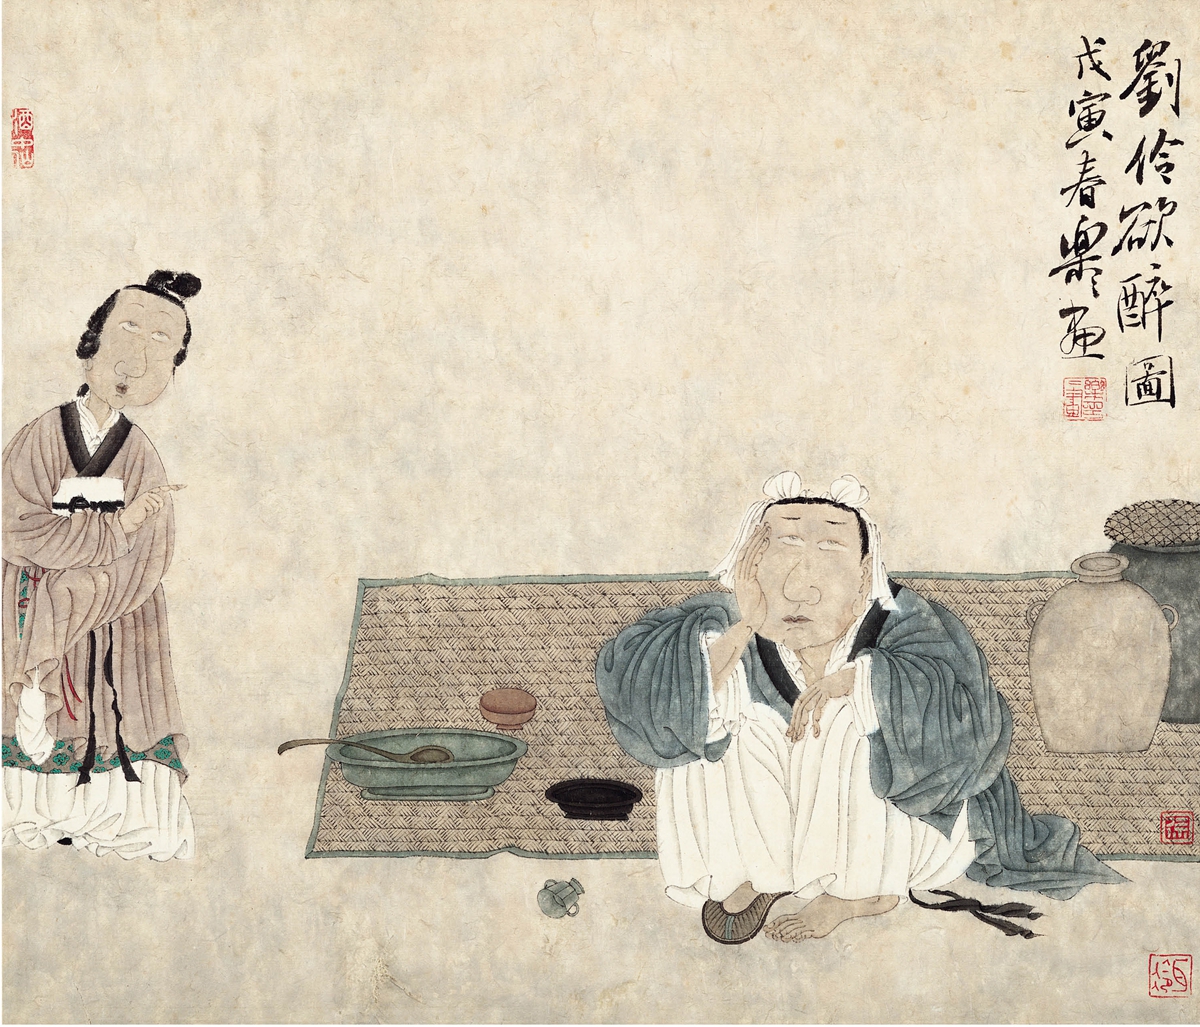 中国传统文化水墨画介绍_水墨画的传统文化_中国传统文化水墨画